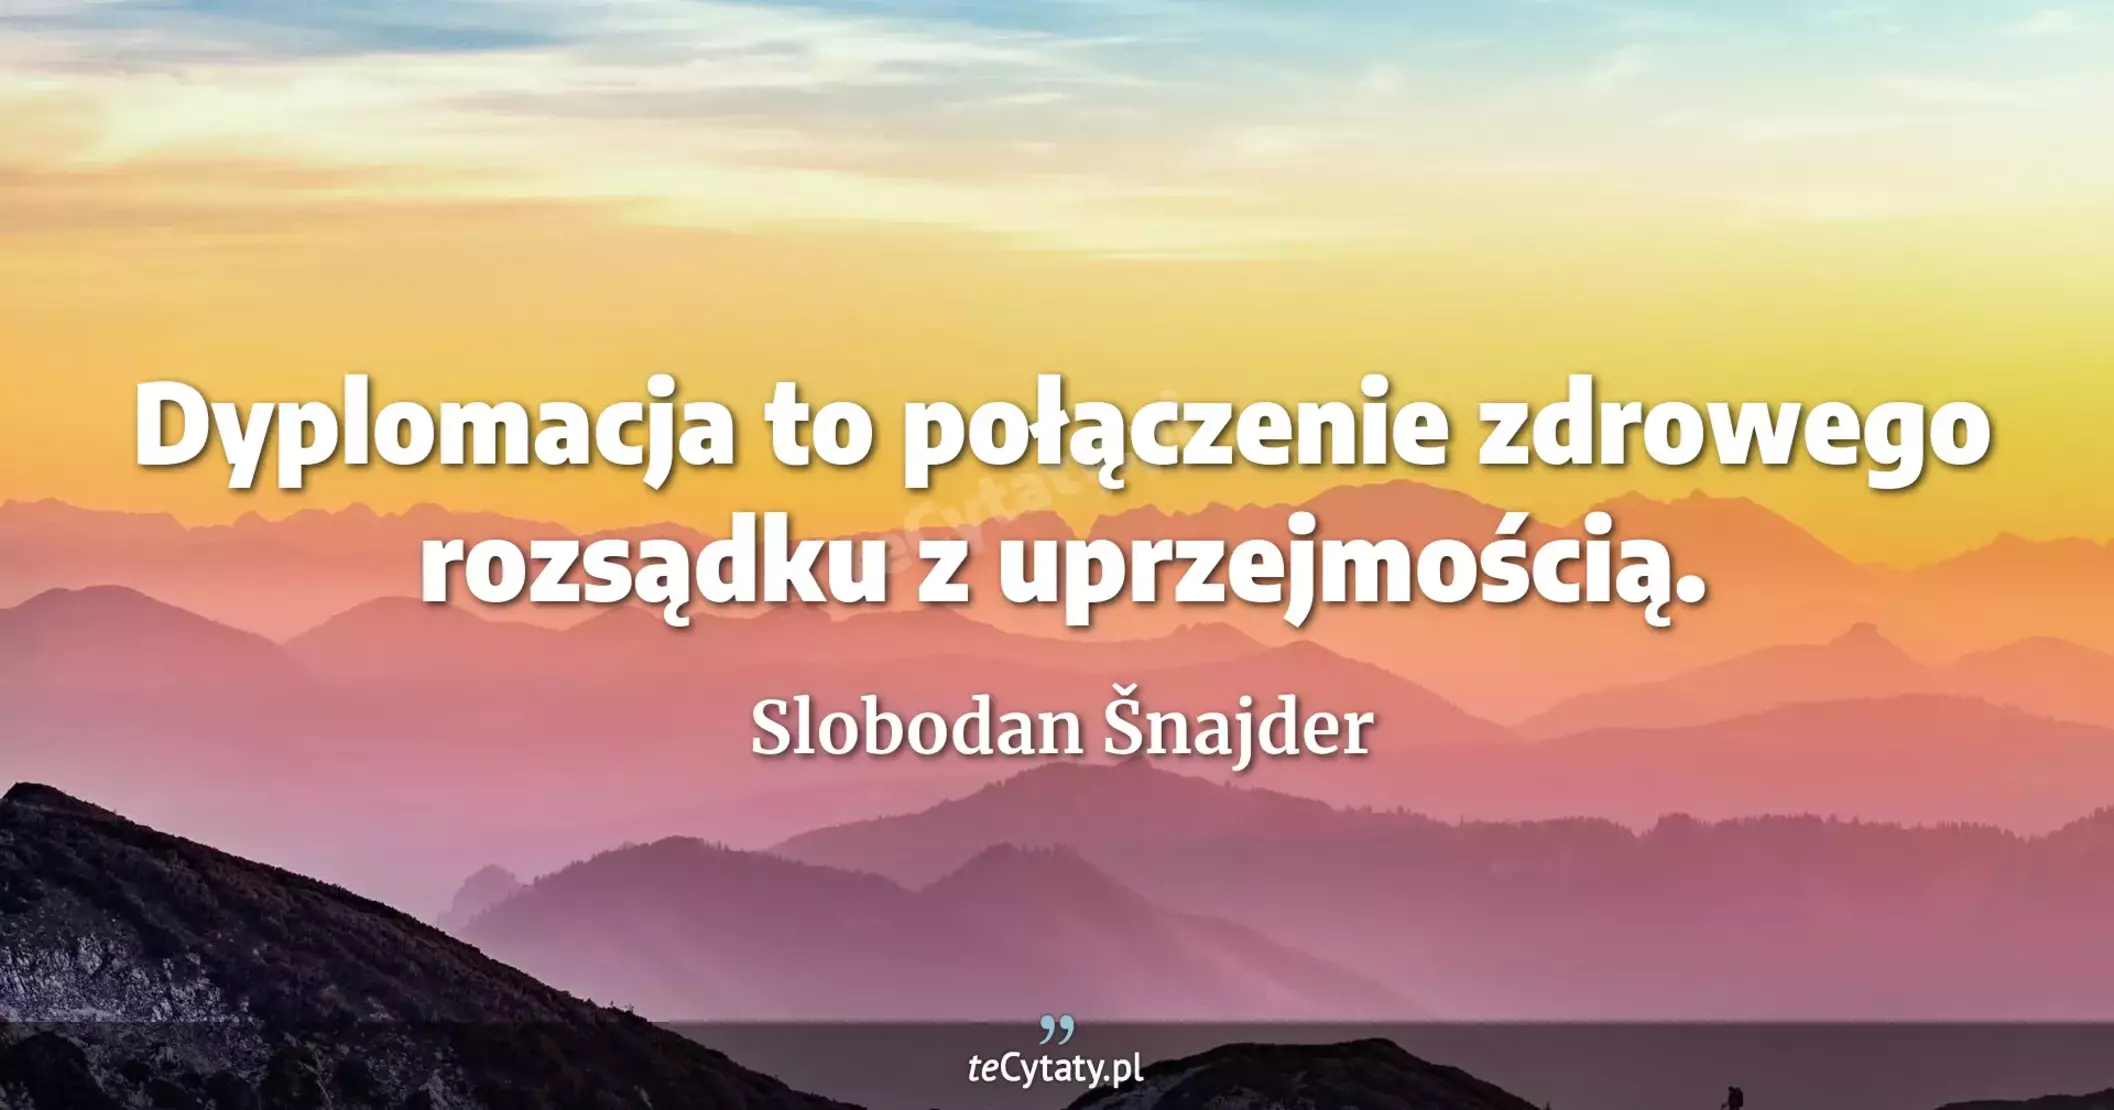 Dyplomacja to połączenie zdrowego rozsądku z uprzejmością. - Slobodan Šnajder